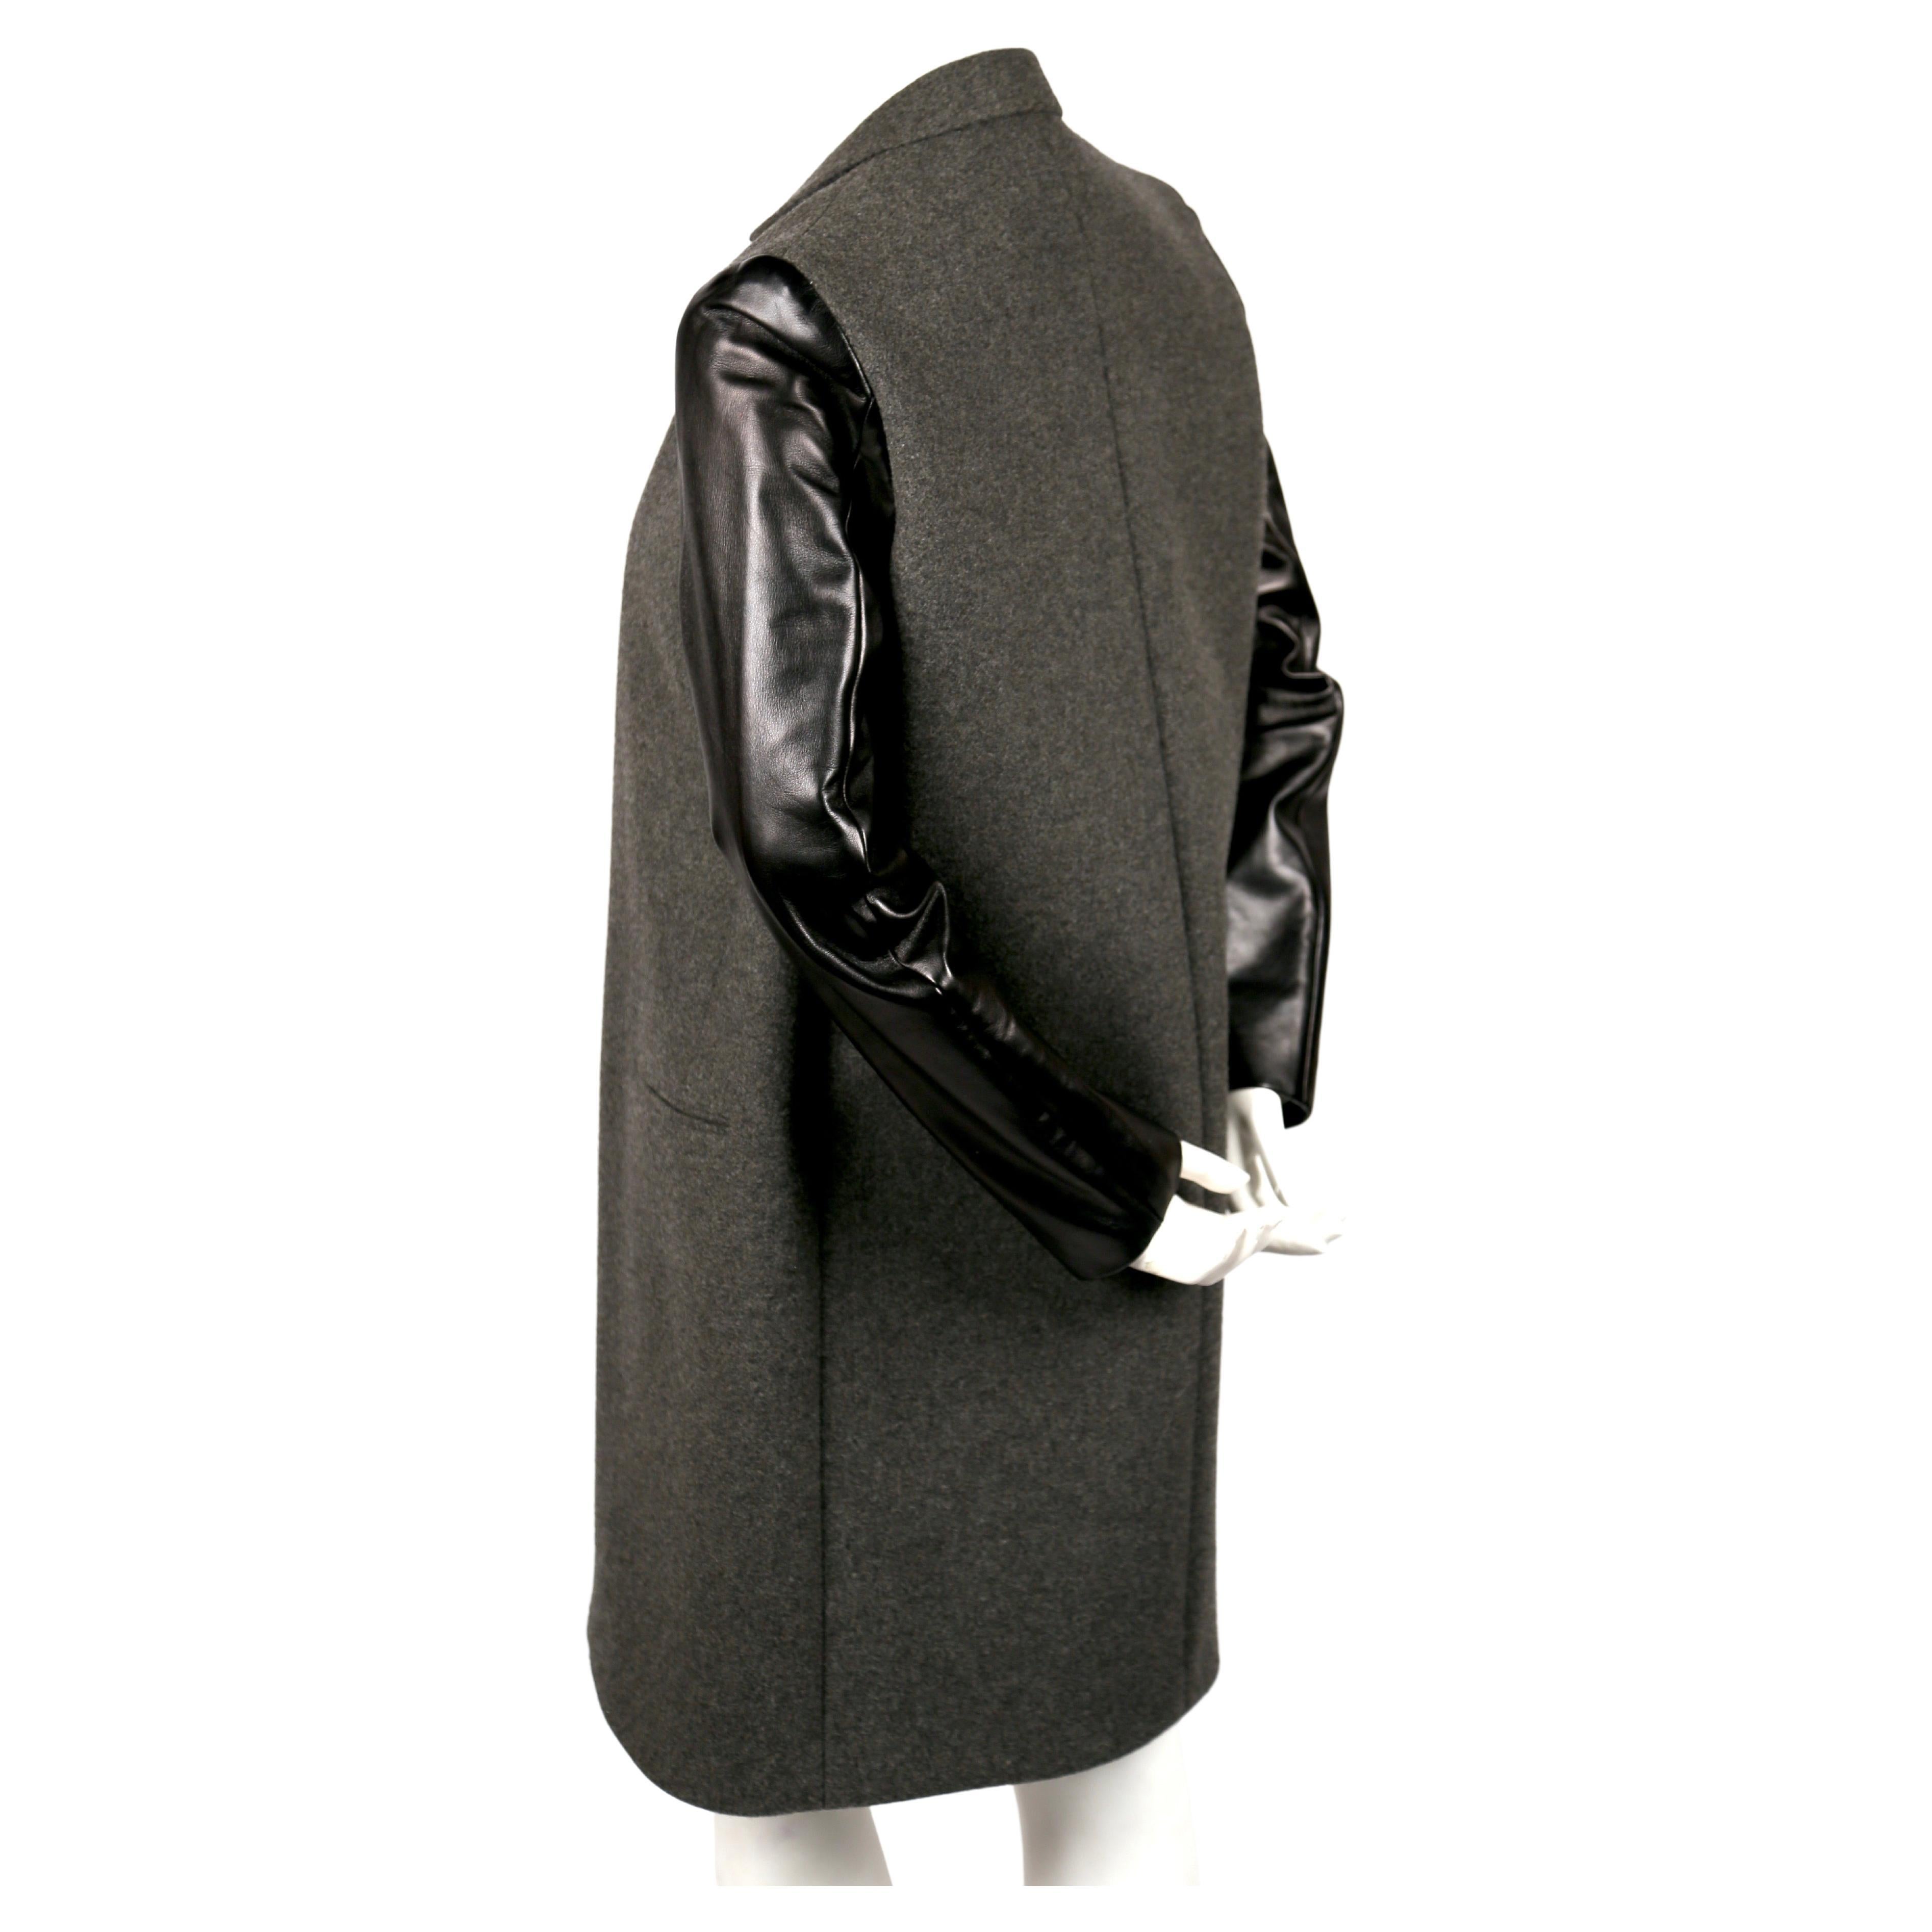 Manteau crombie gris anthracite avec manches en cuir d'agneau noir, conçu par Phoebe Philo pour Celine. Labellisée taille française 40 qui convient mieux à une taille S ou M. Mesures approximatives : épaule 15,5